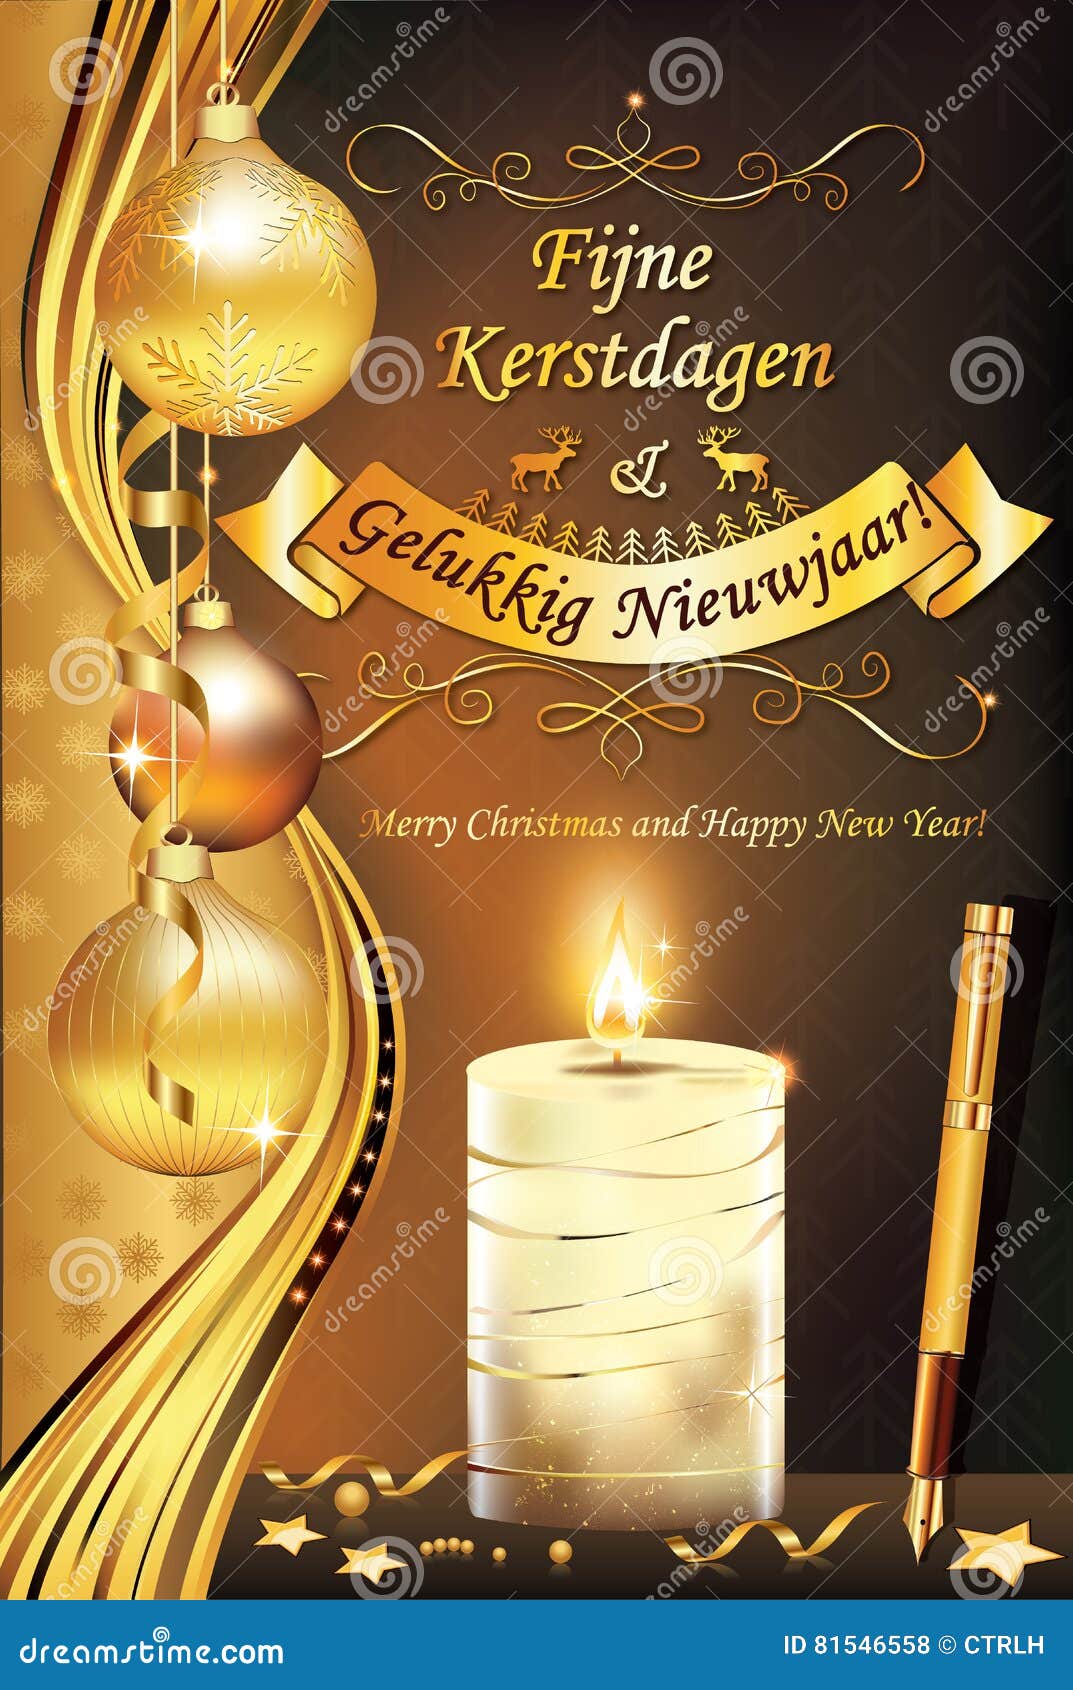 Buon Natale Olandese.Buon Natale E Buon Anno Nella Lingua Olandese Illustrazione Di Stock Illustrazione Di Desideri Linguaggio 81546558